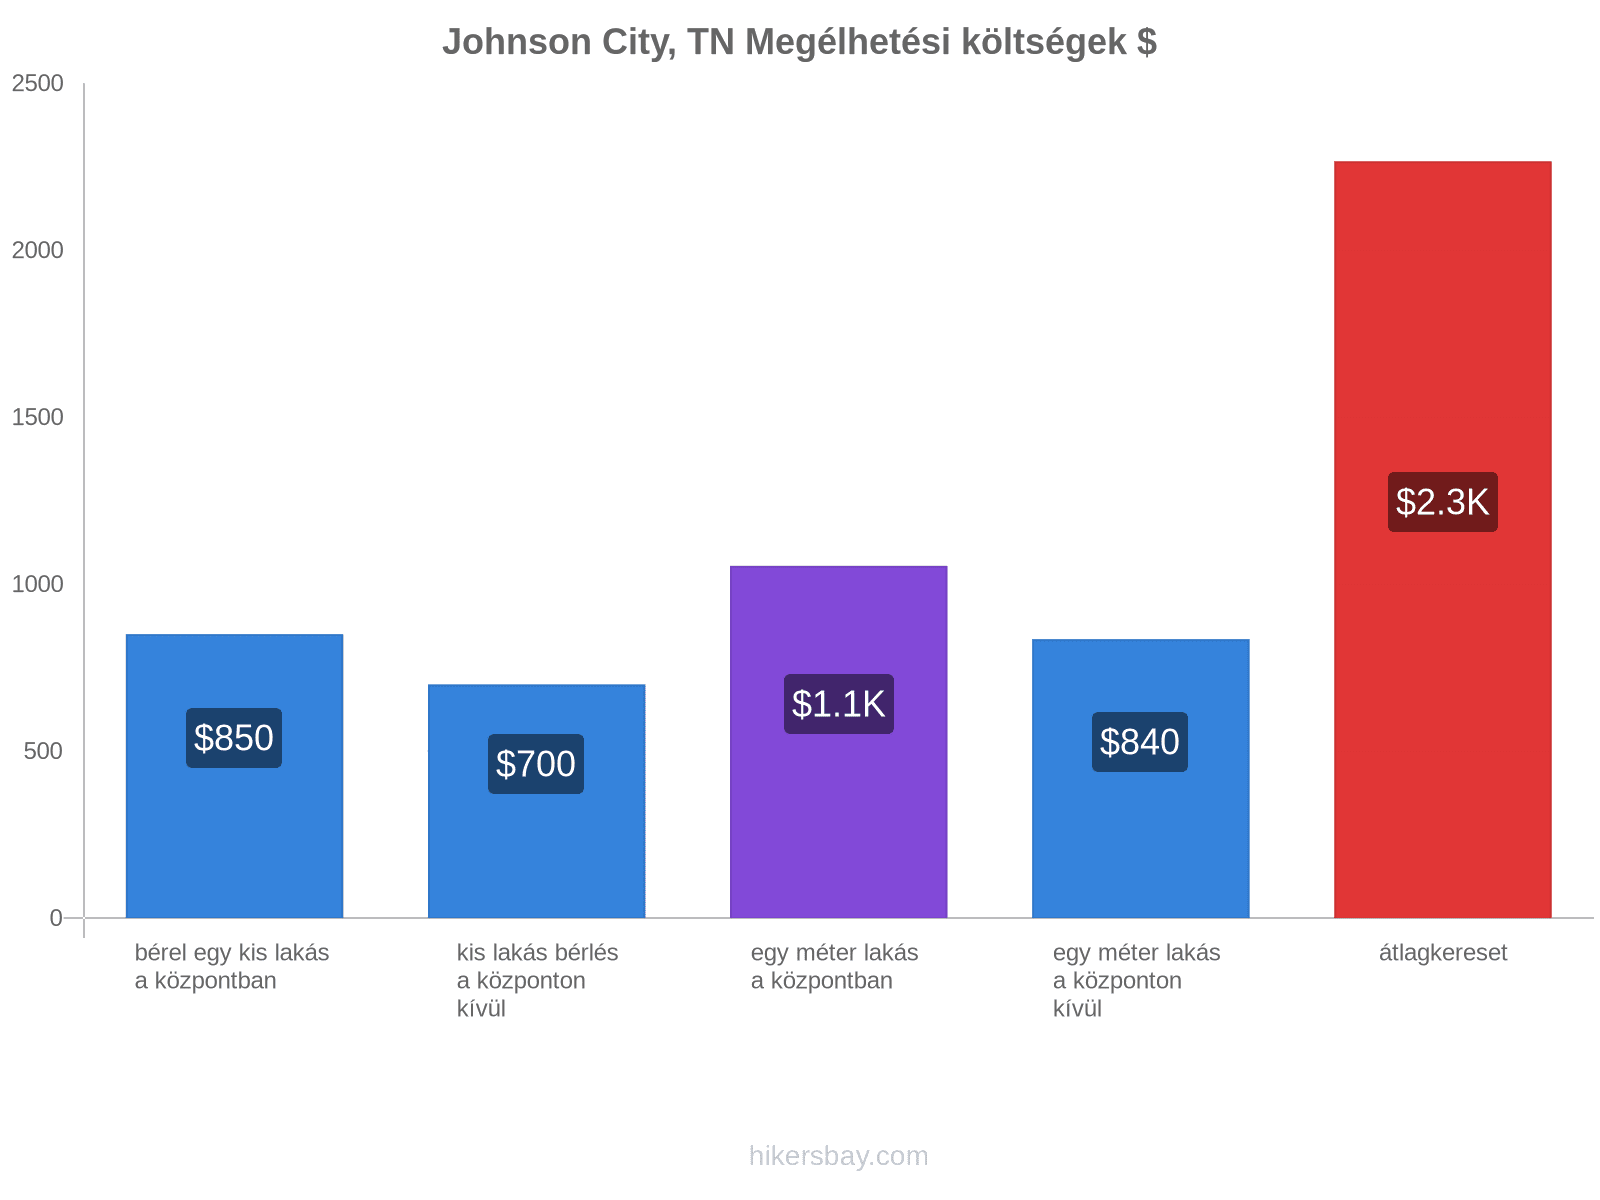 Johnson City, TN megélhetési költségek hikersbay.com